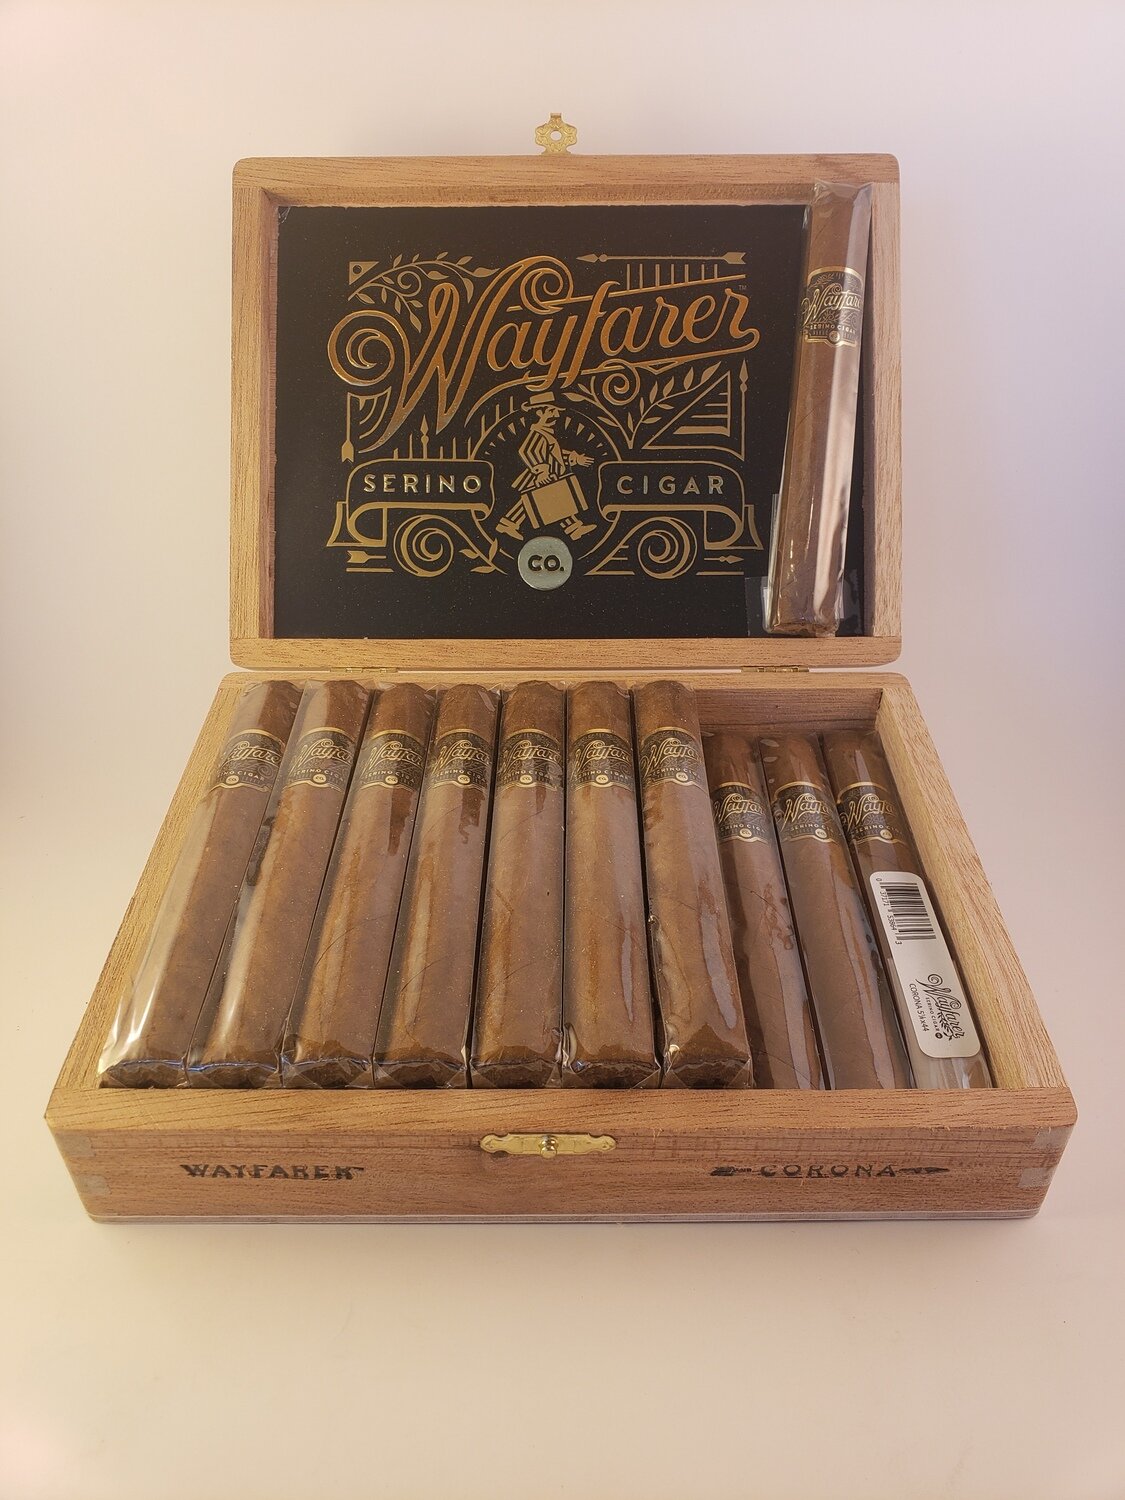 Serino Wayfarer Dalia 6 3/4 x 43 Single Cigar